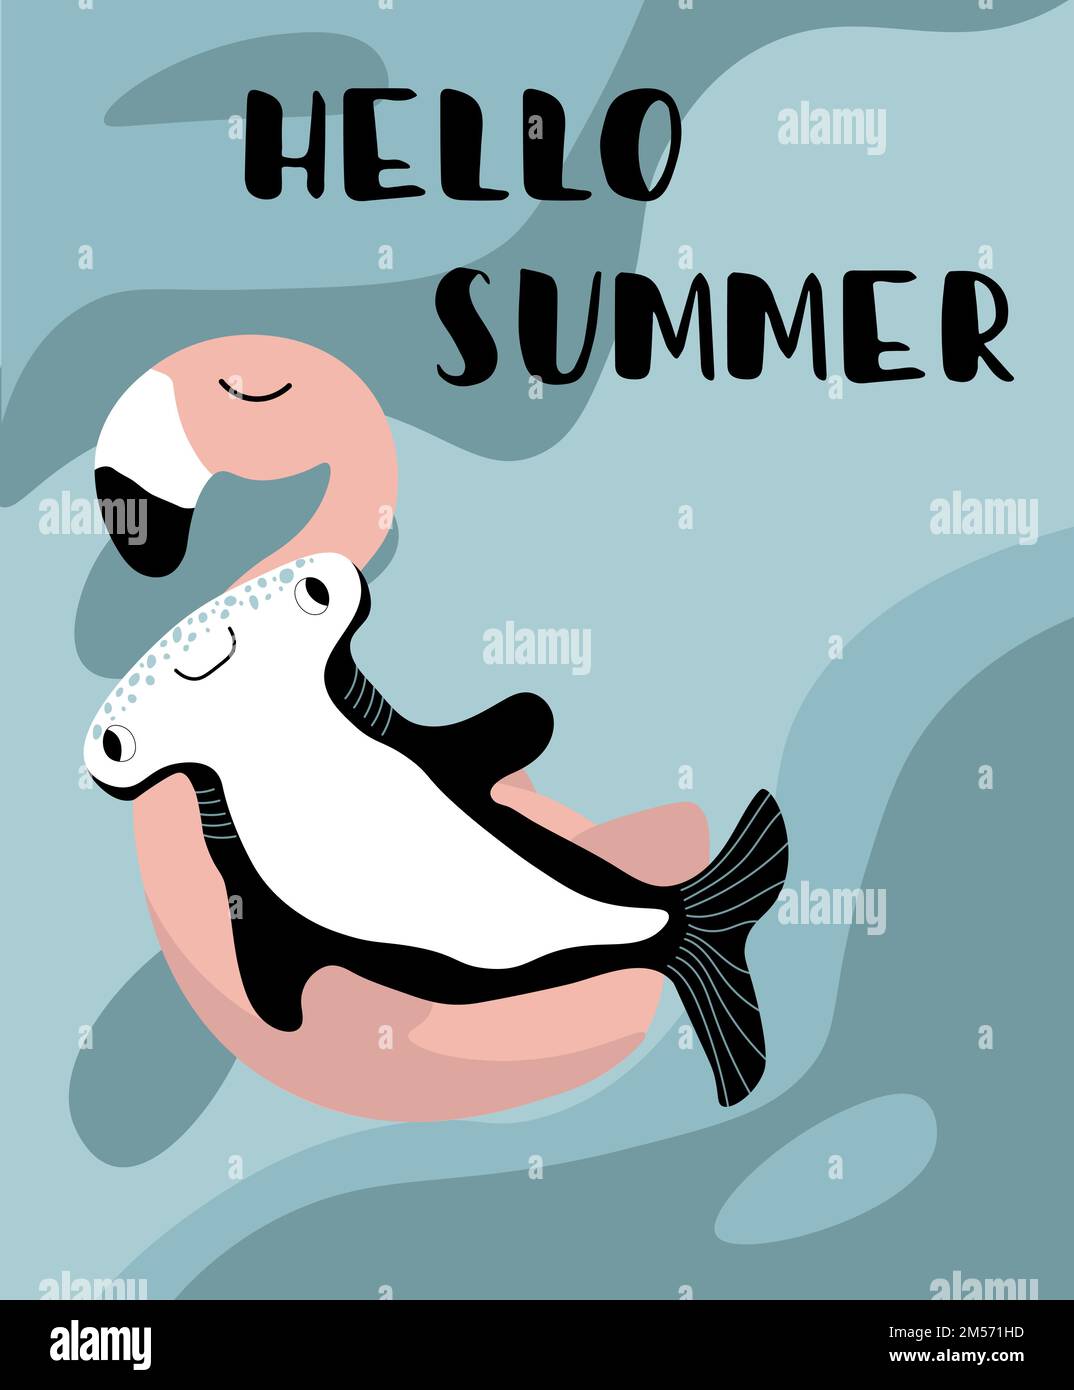 Vektor-Ozean-Illustration mit Hammerhaie-Fischen auf einem aufblasbaren Flamingo. Hello Summer - Moderne Schriftzeichen. Unterwassertiere. Design für Banner Stock Vektor